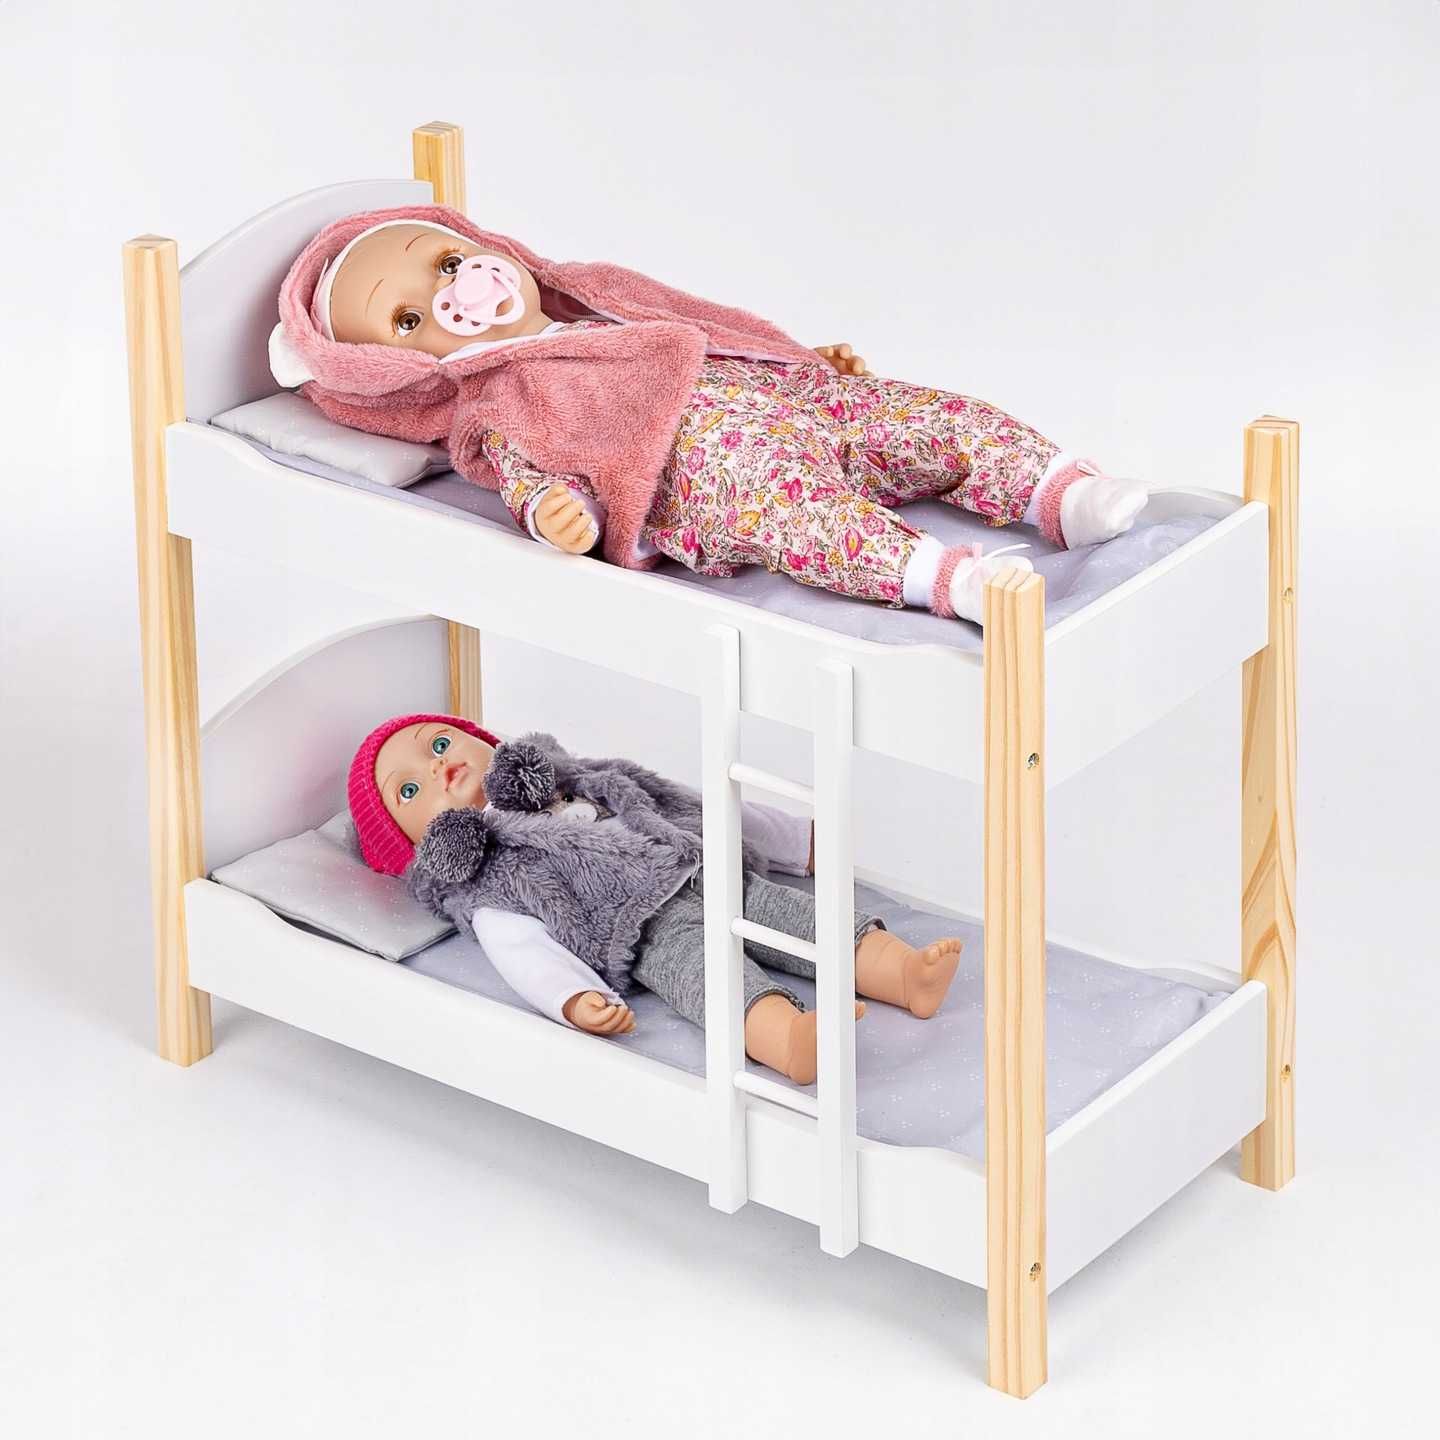 Drewniane dwupiętrowe łóżeczko Dla lalkek  53cm + POŚCIEL